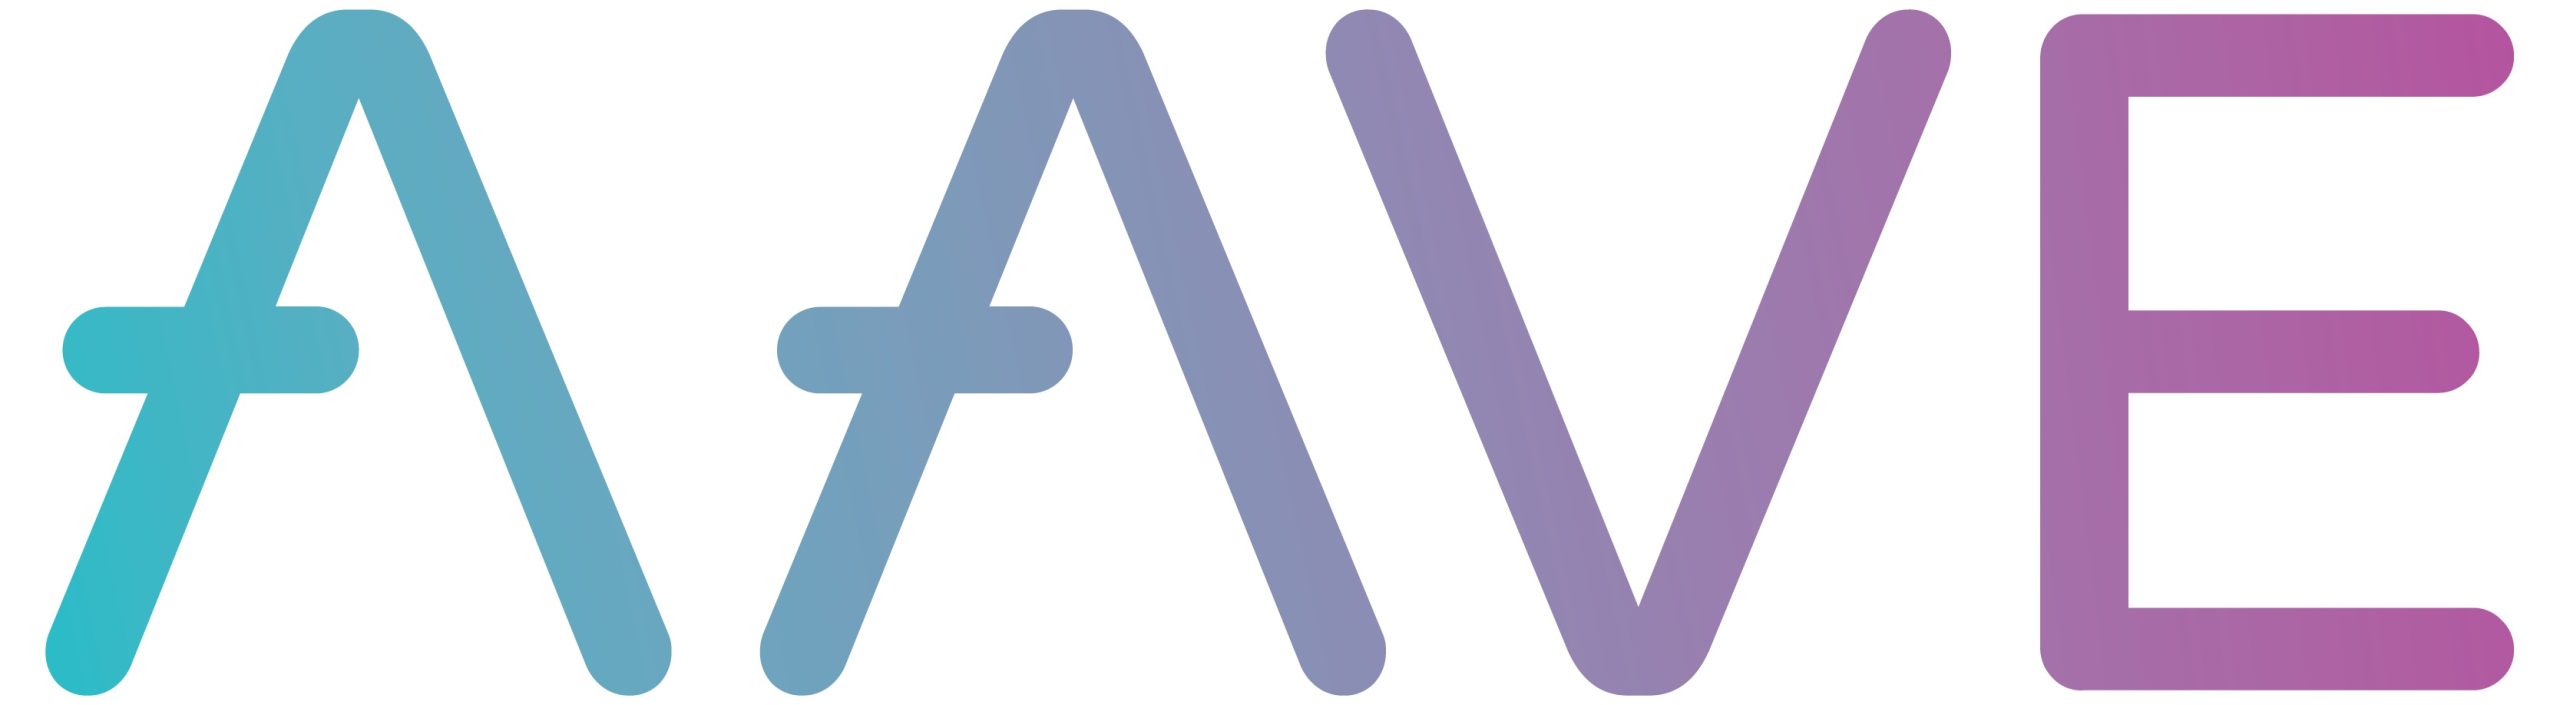 Aave – DiarioBitcoin